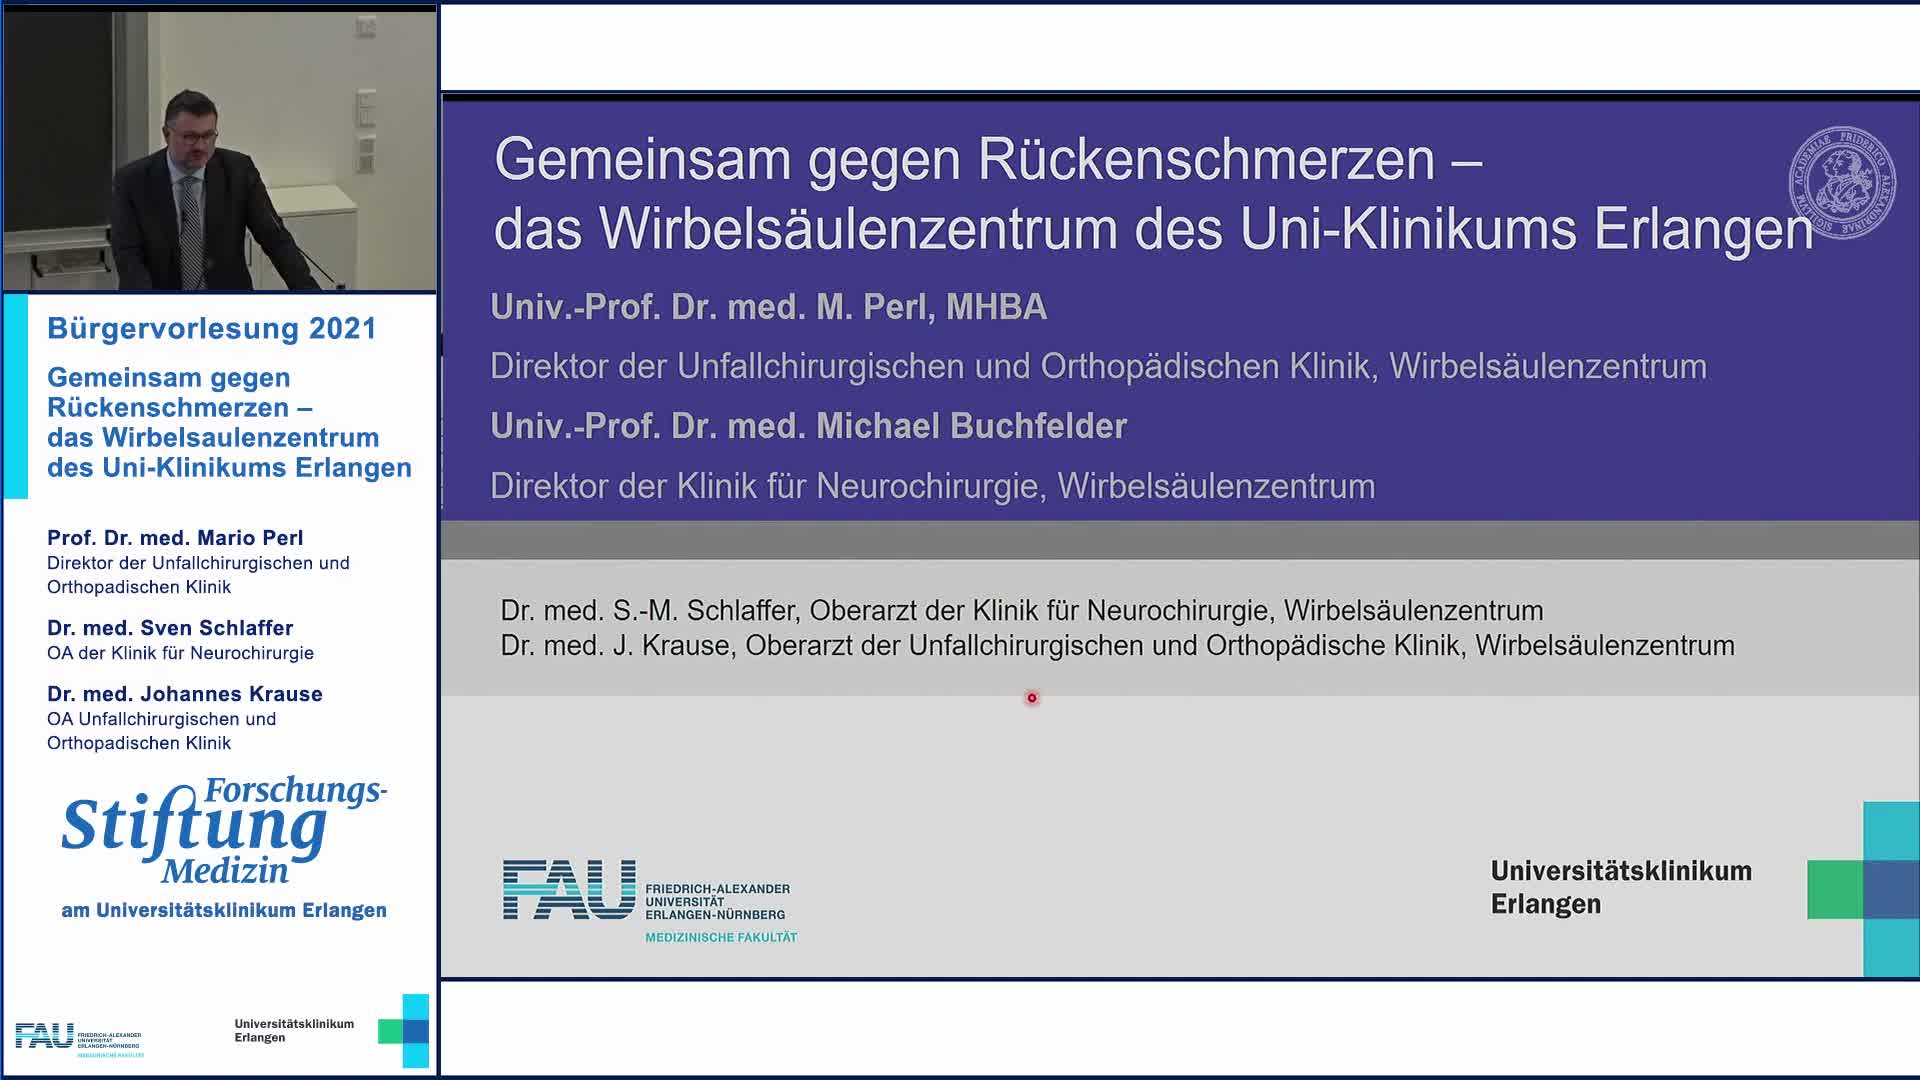 Gemeinsam gegen Rückenschmerzen – das Wirbelsäulenzentrum des Uni-Klinikums Erlangen preview image